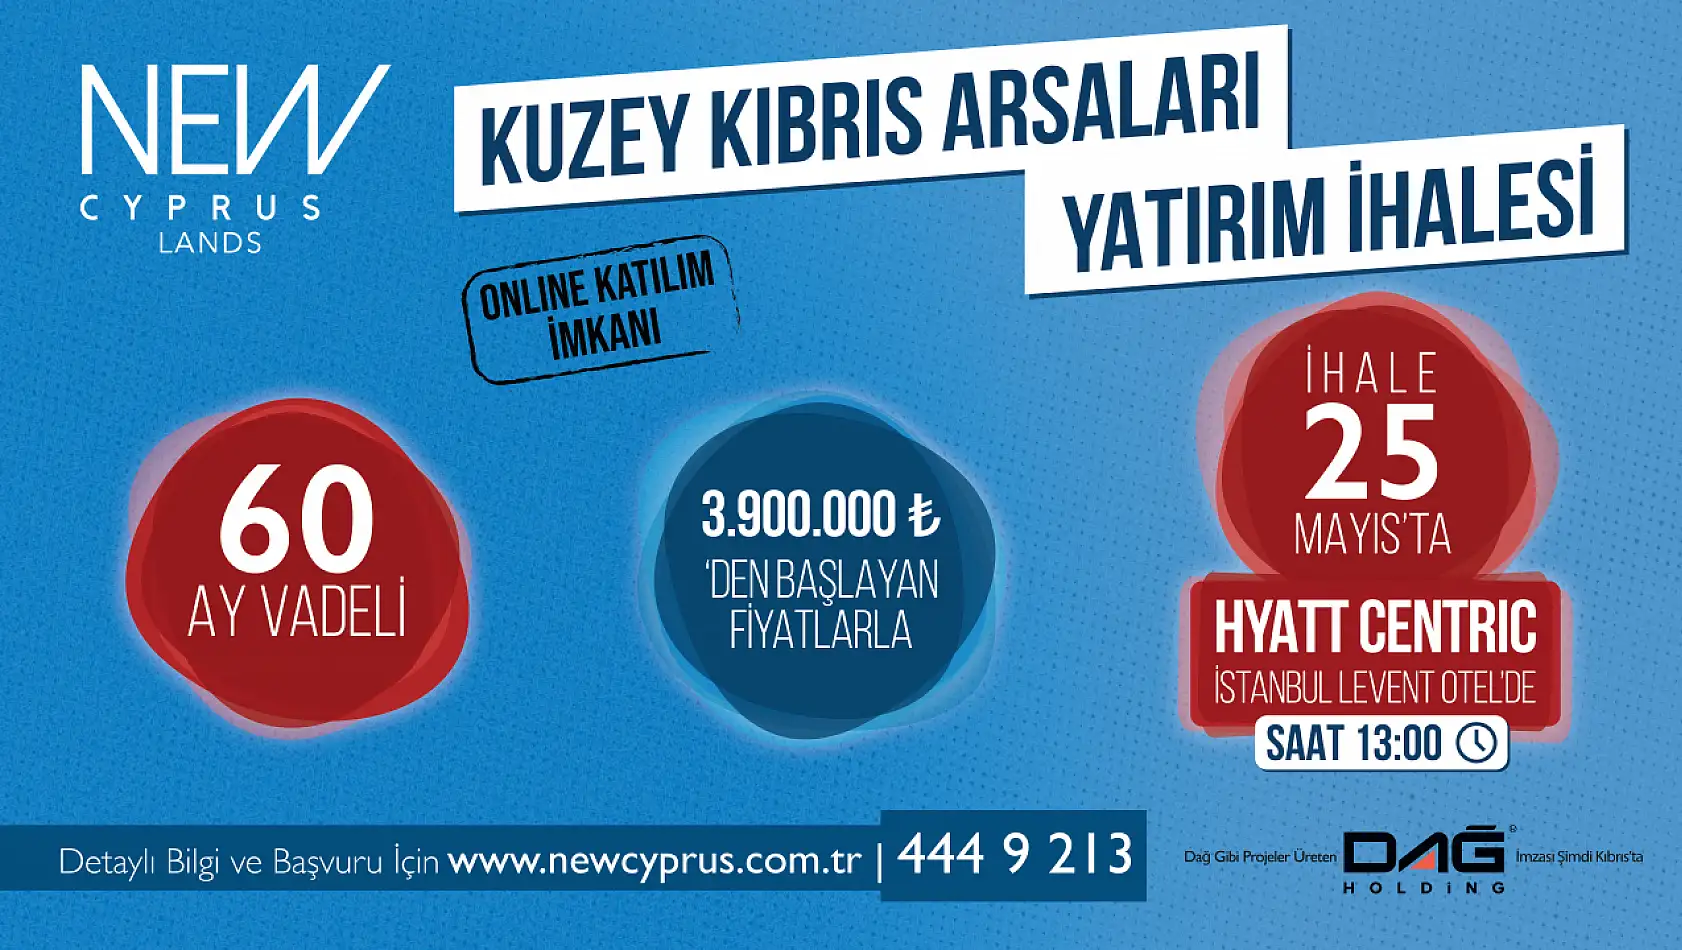 Dağ Holding Güvencesi ile K.K.T.C.'de Arsa Yatırımı İmkanı!